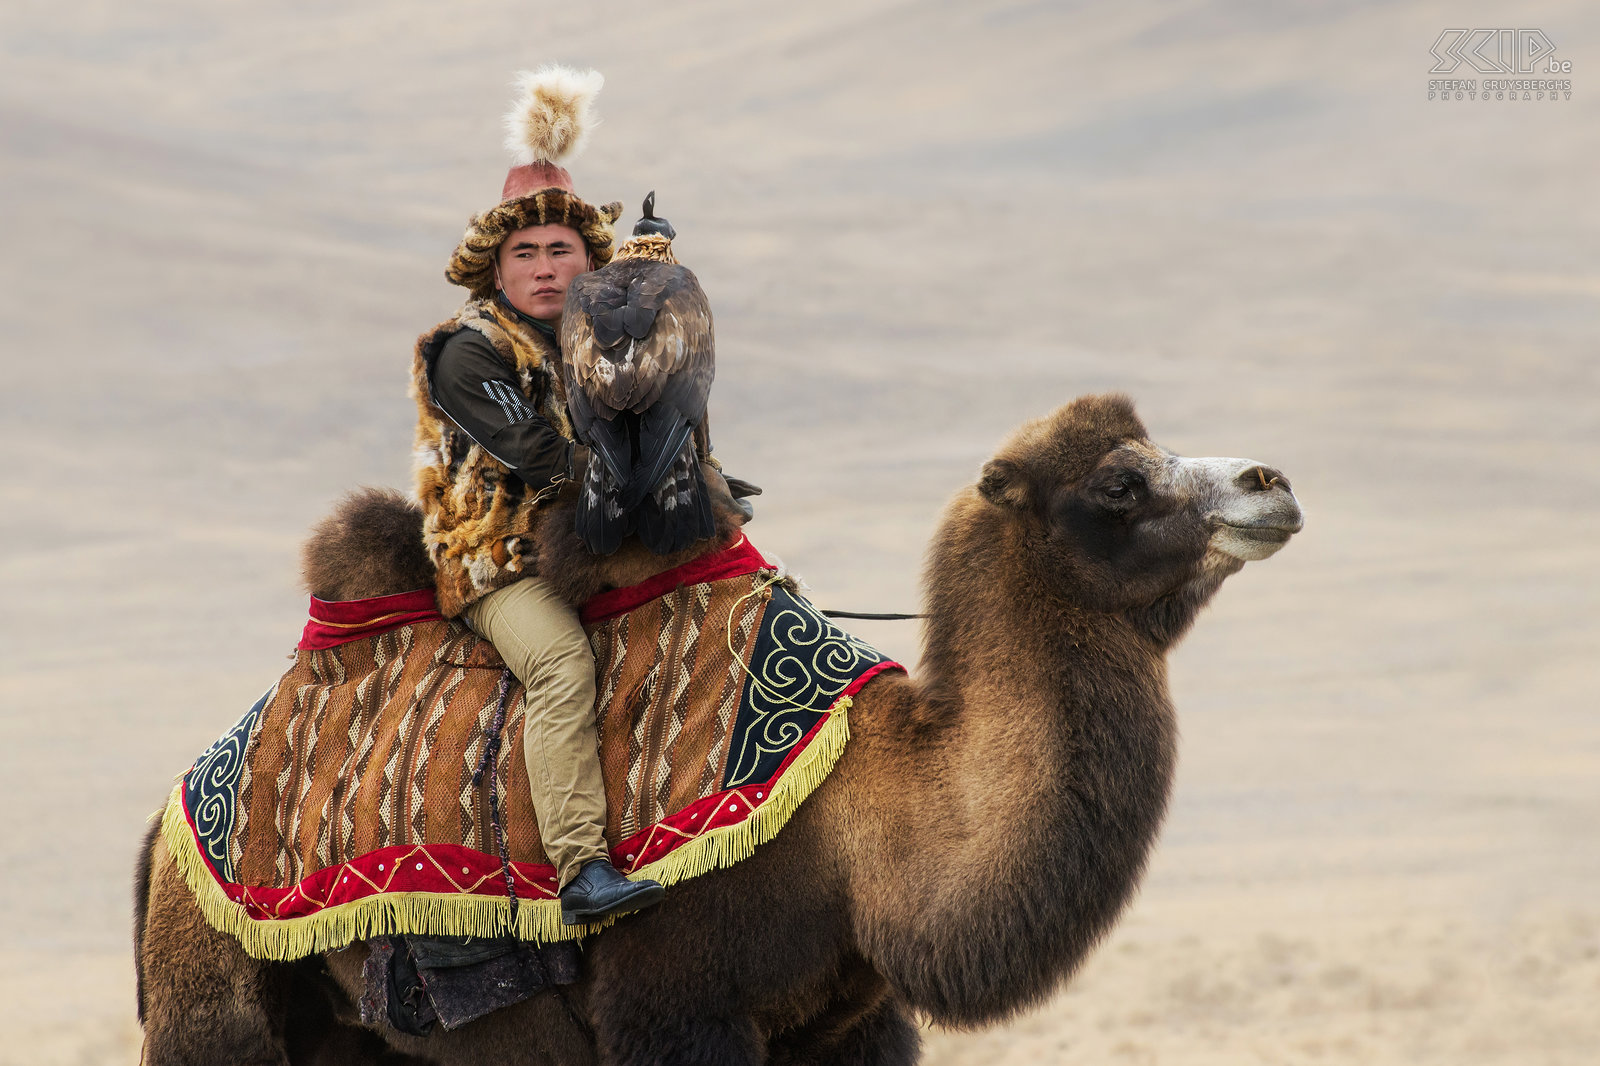 Ulgii - Golden Eagle Festival - Eagle hunter on camel Some eagle hunters also ride camels. Stefan Cruysberghs